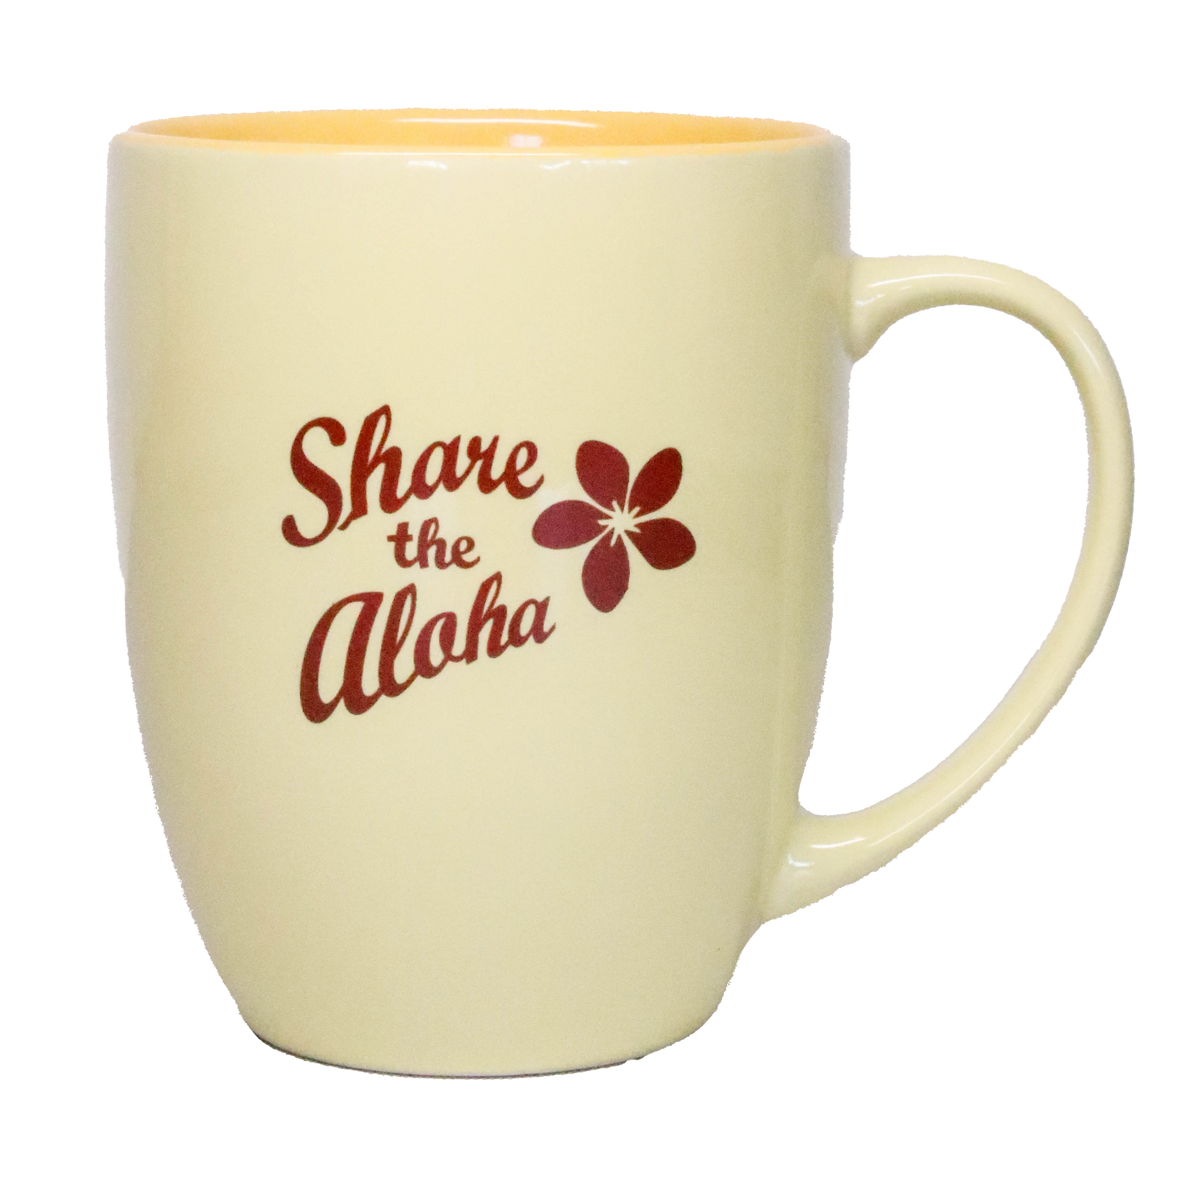 15oz "Share the Aloha" Glossy Yellow Mug